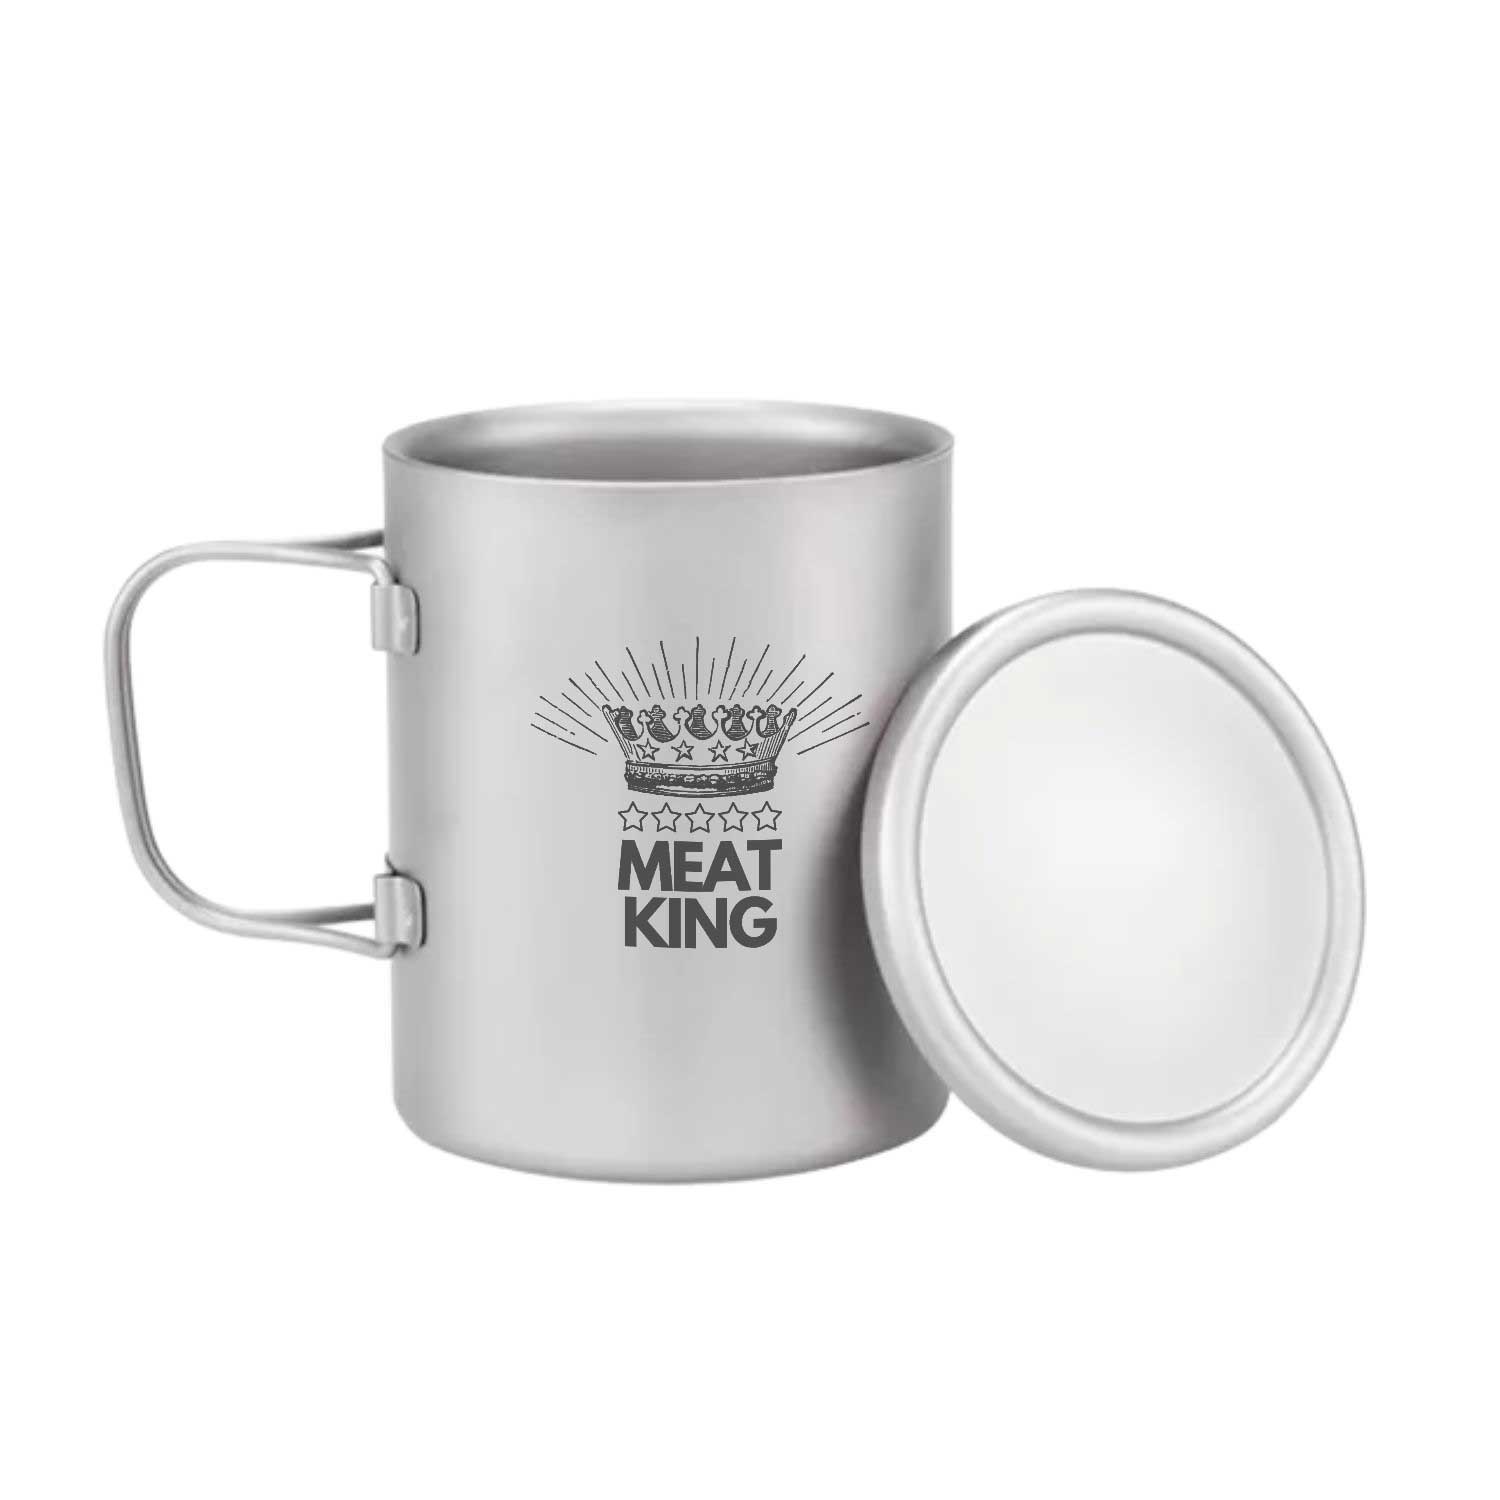 Meat King Premium Titanium Insulated Mug2